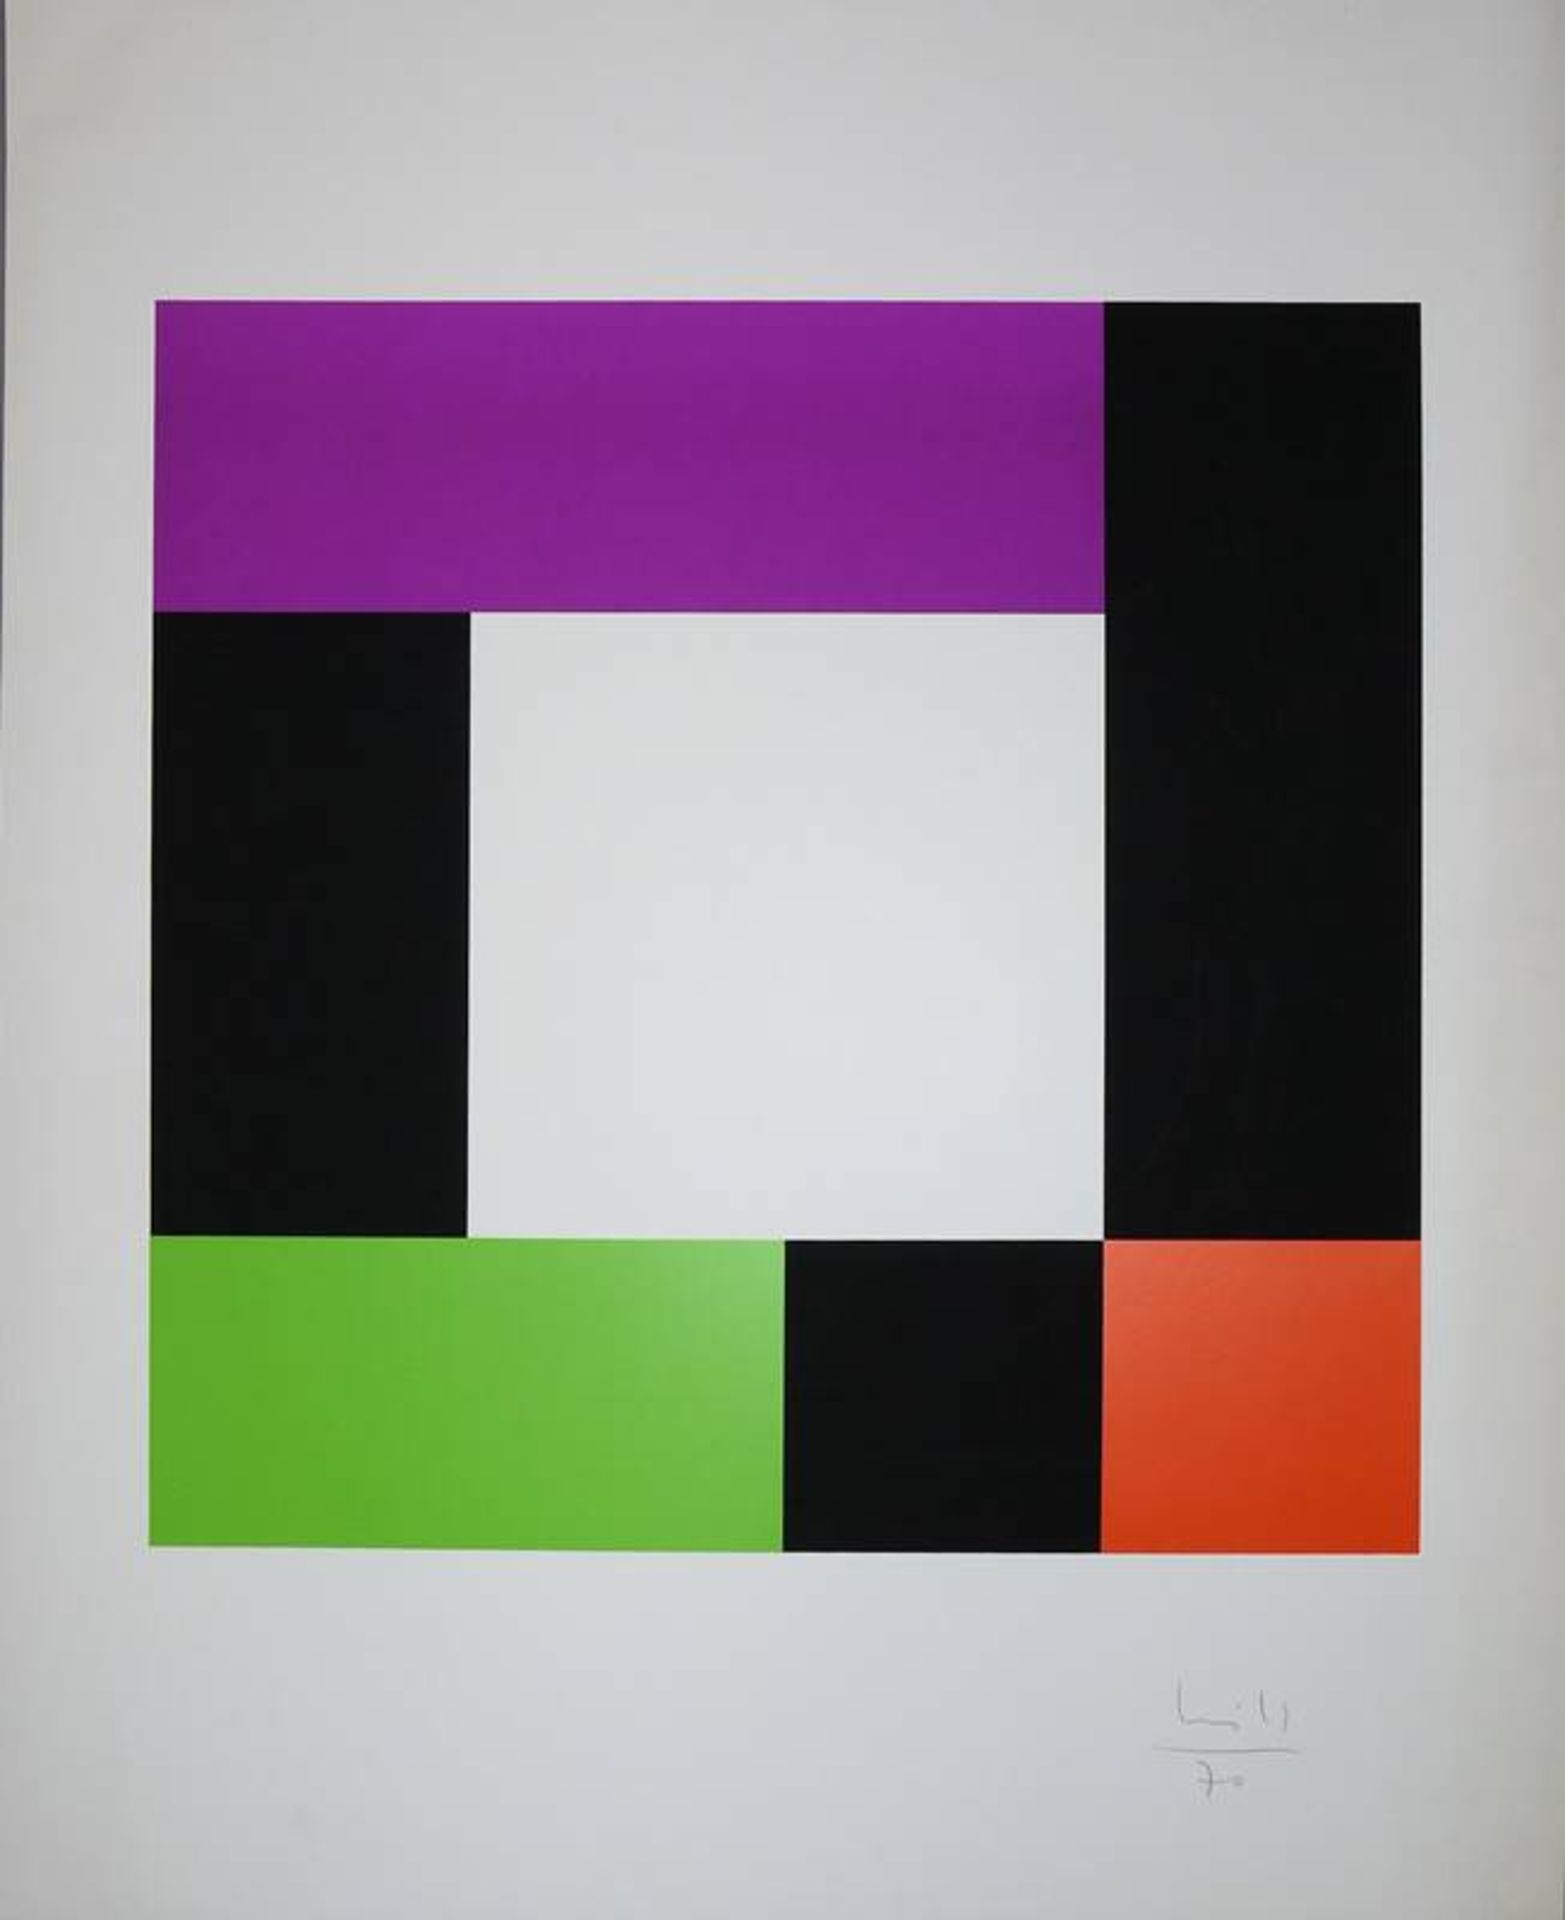 Max Bill, Geometrisch-konkrete Komposition, Farbsiebdruck von 1970, sign. 